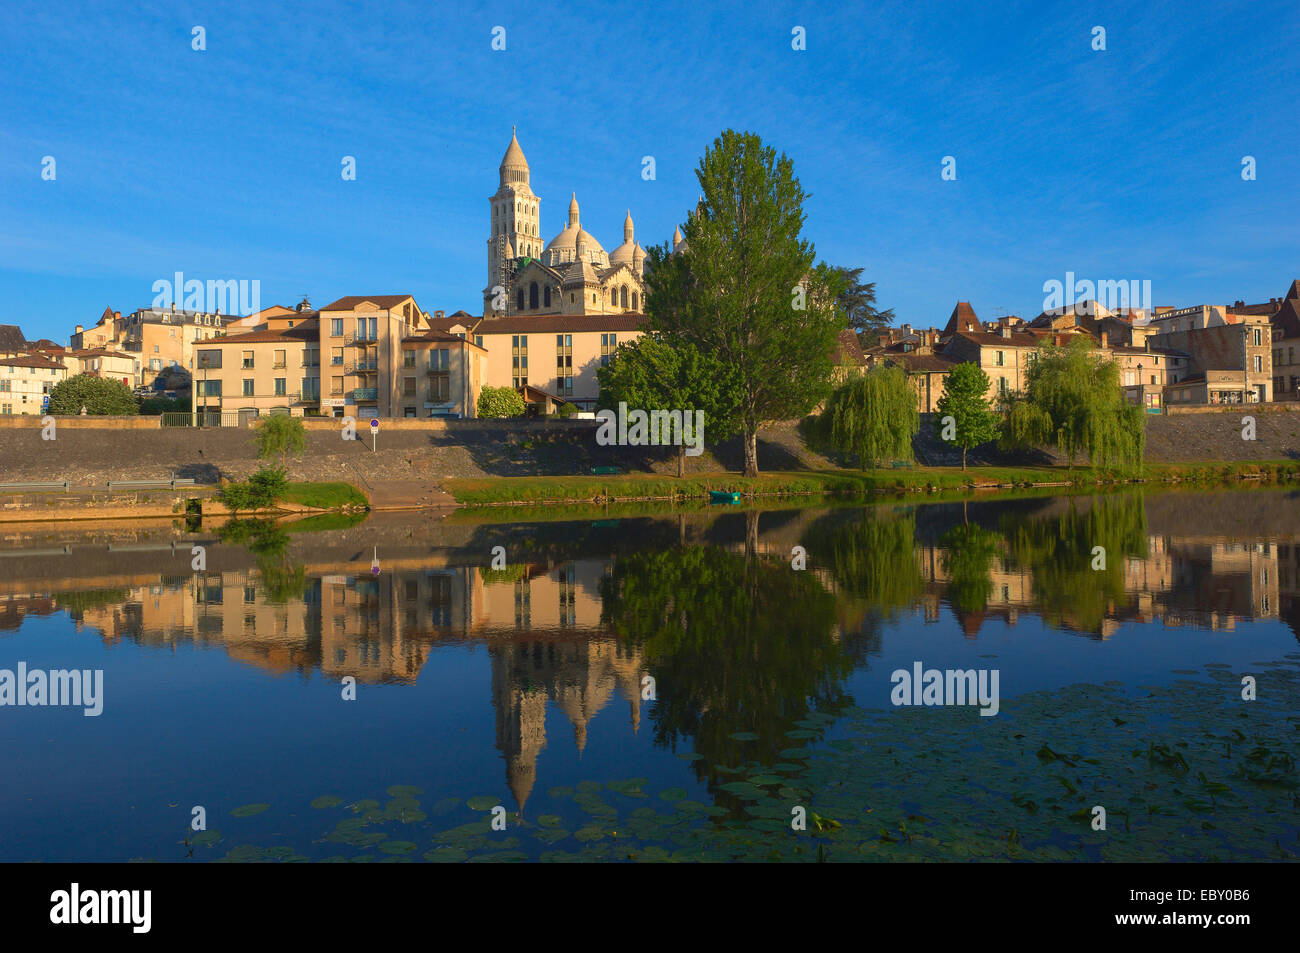 Kathedrale Saint-Front, World Heritage Site der Strecken von Santiago de Compostela in Frankreich, Fluss Isle, Perigueux Stockfoto